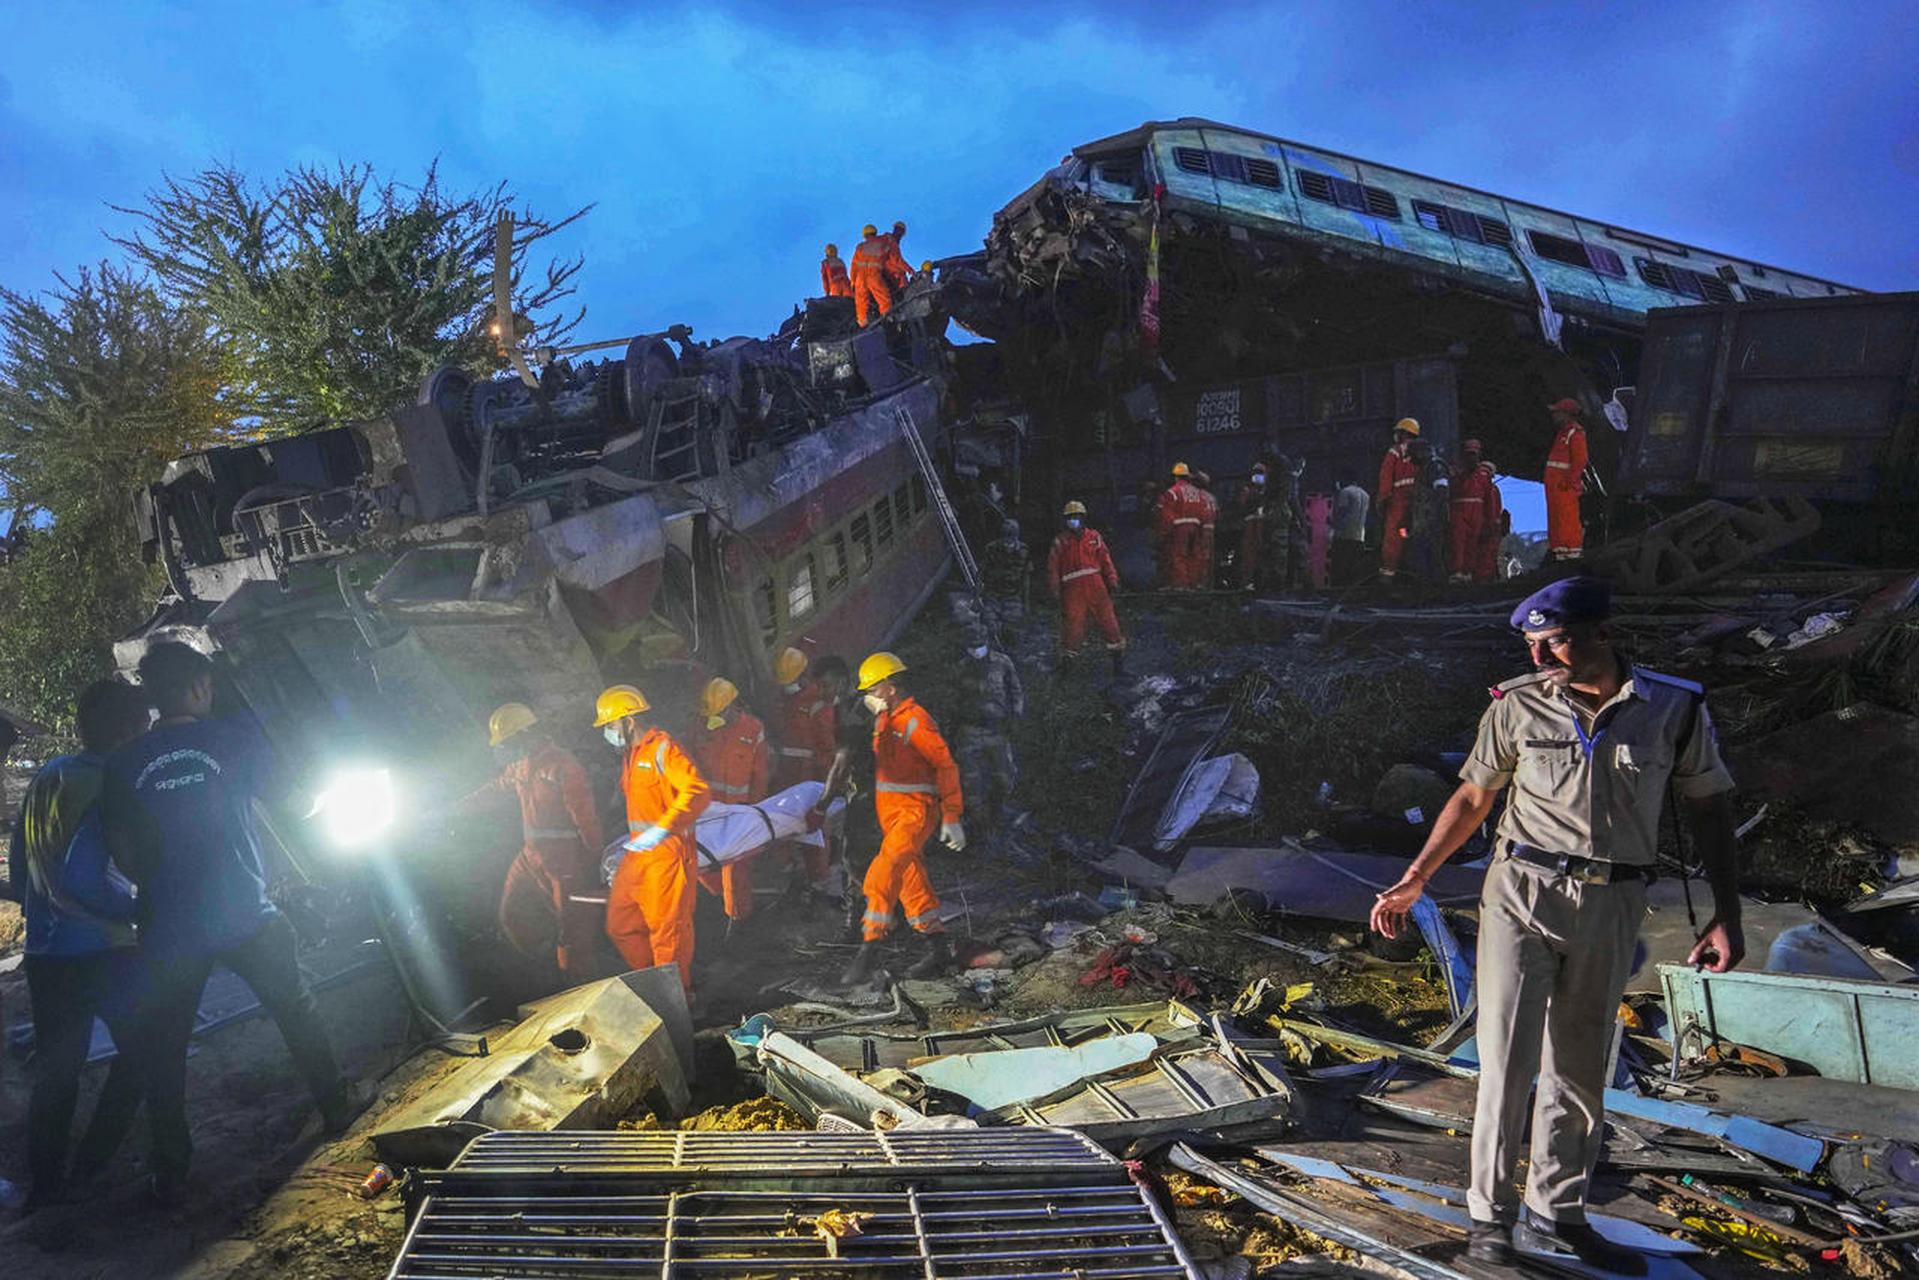 印度火车出轨事故原因:印度火车事故造成近300人死亡,原因是信号系统